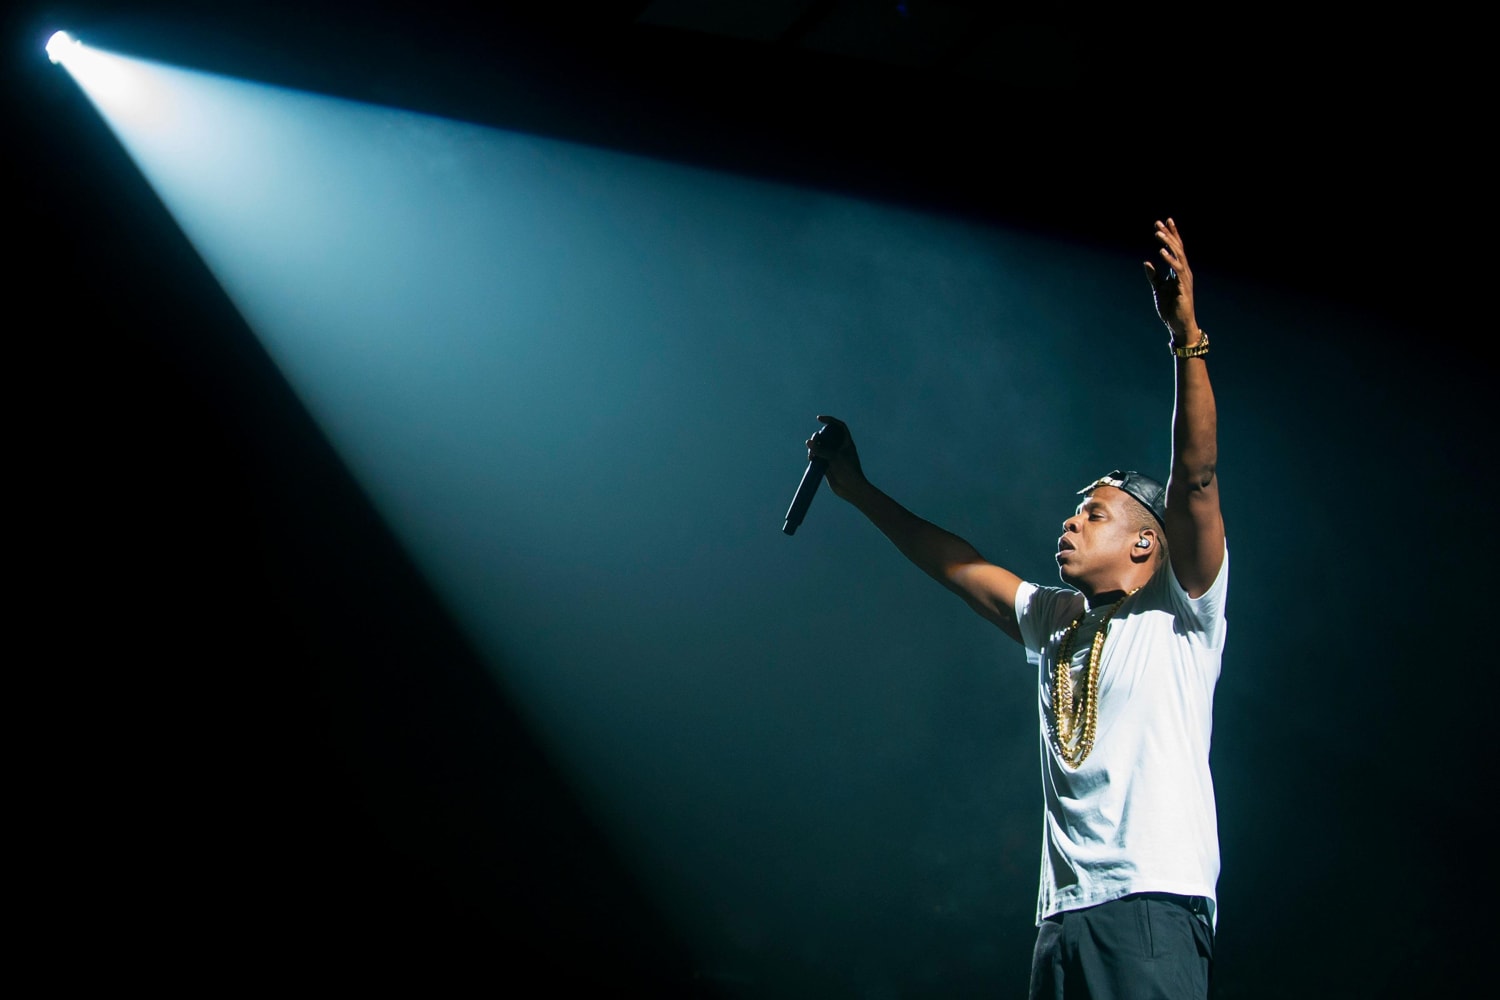 The 100 Best Jay-Z Songs